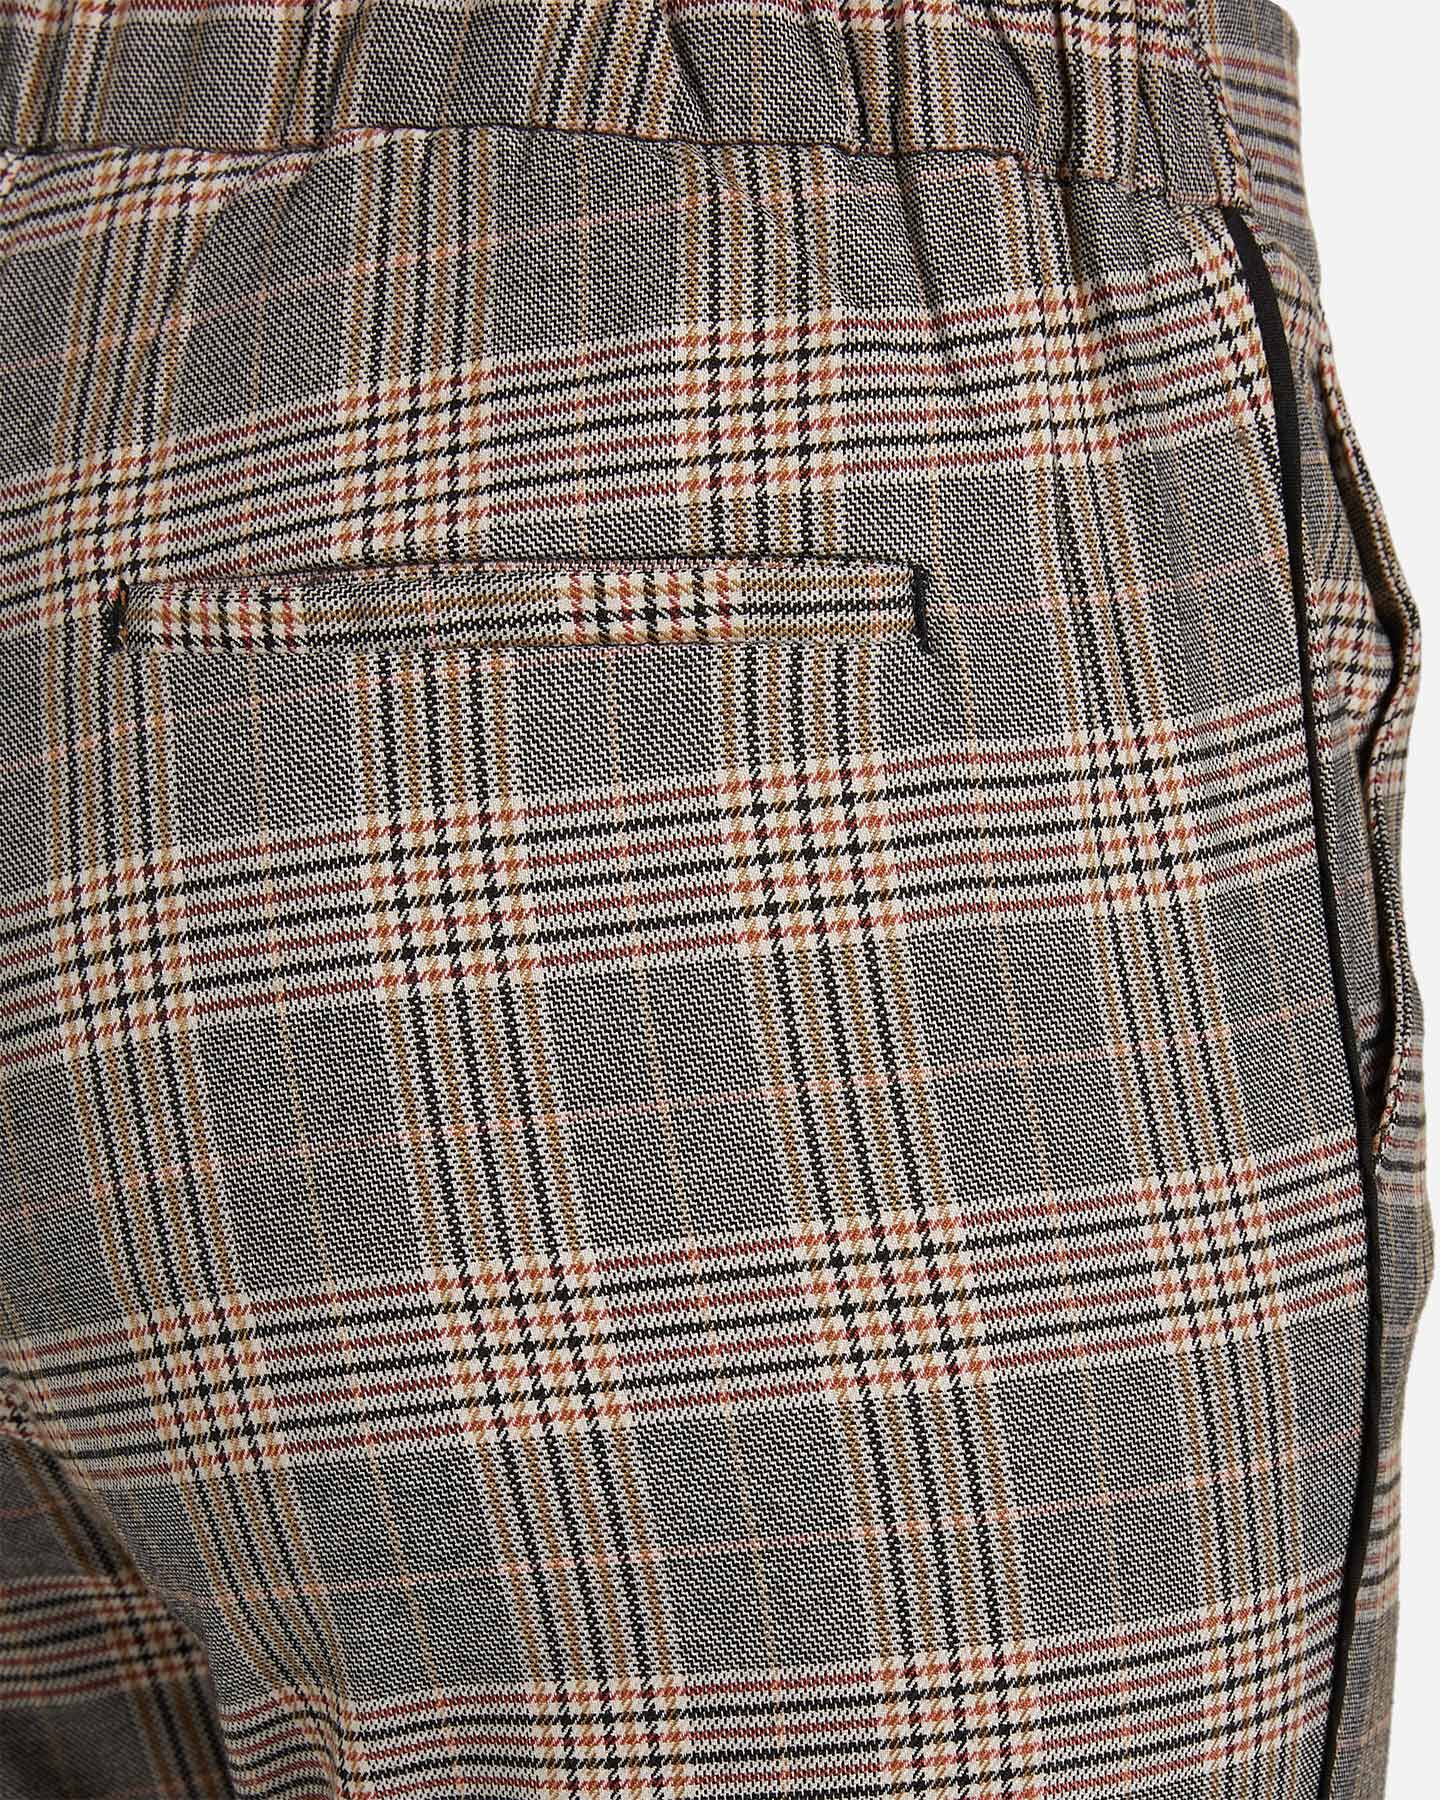  Pantalone DACK'S CHINO W S4080204|896|40 scatto 3